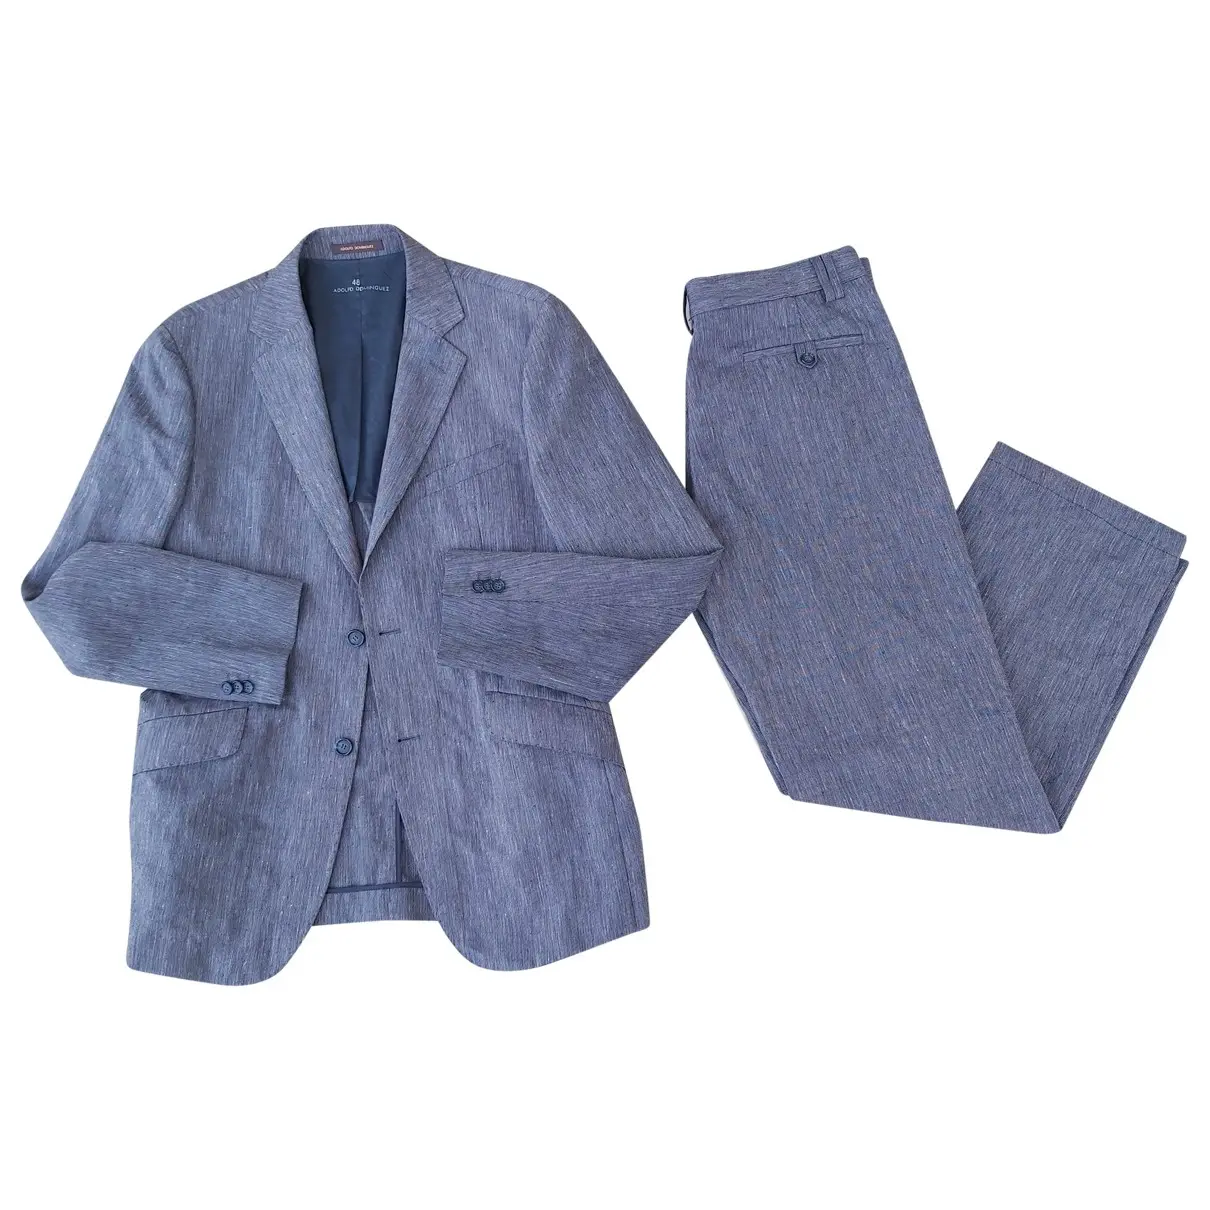 Adolfo Dominguez Linen suit for sale